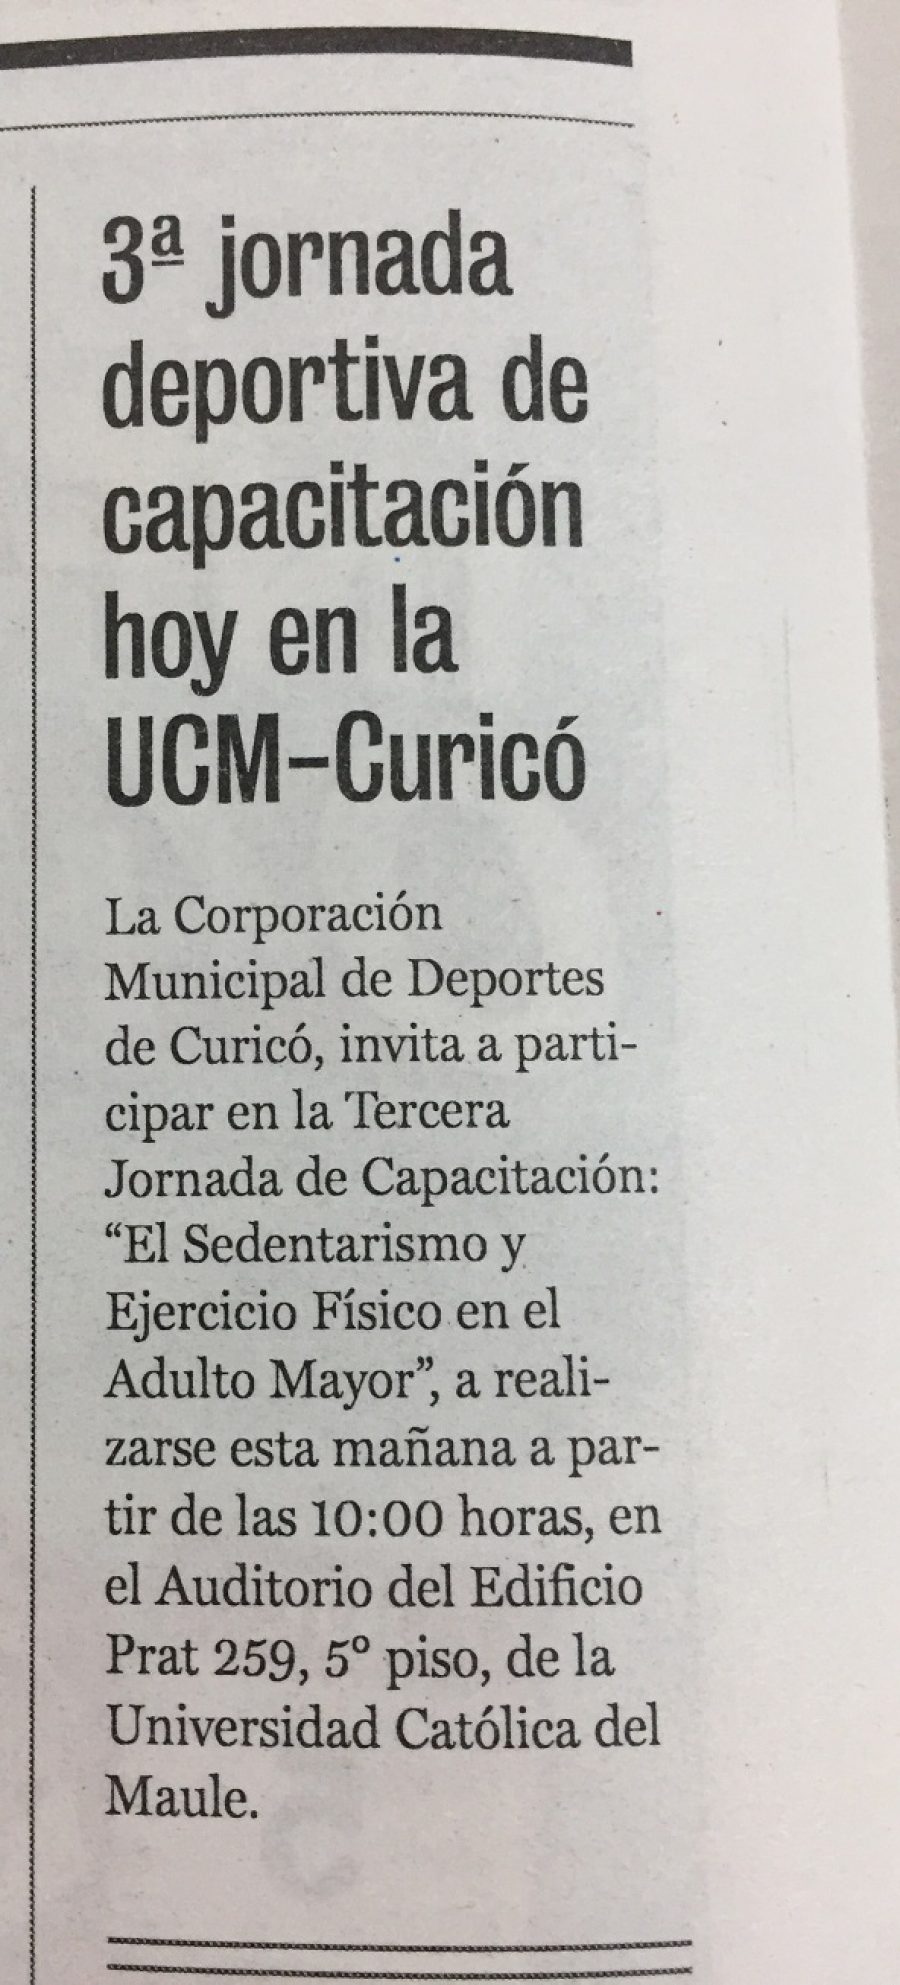 29 de julio en Diario La Prensa: “3° jornada deportiva de capacitación hoy en la UCM-Curicó”